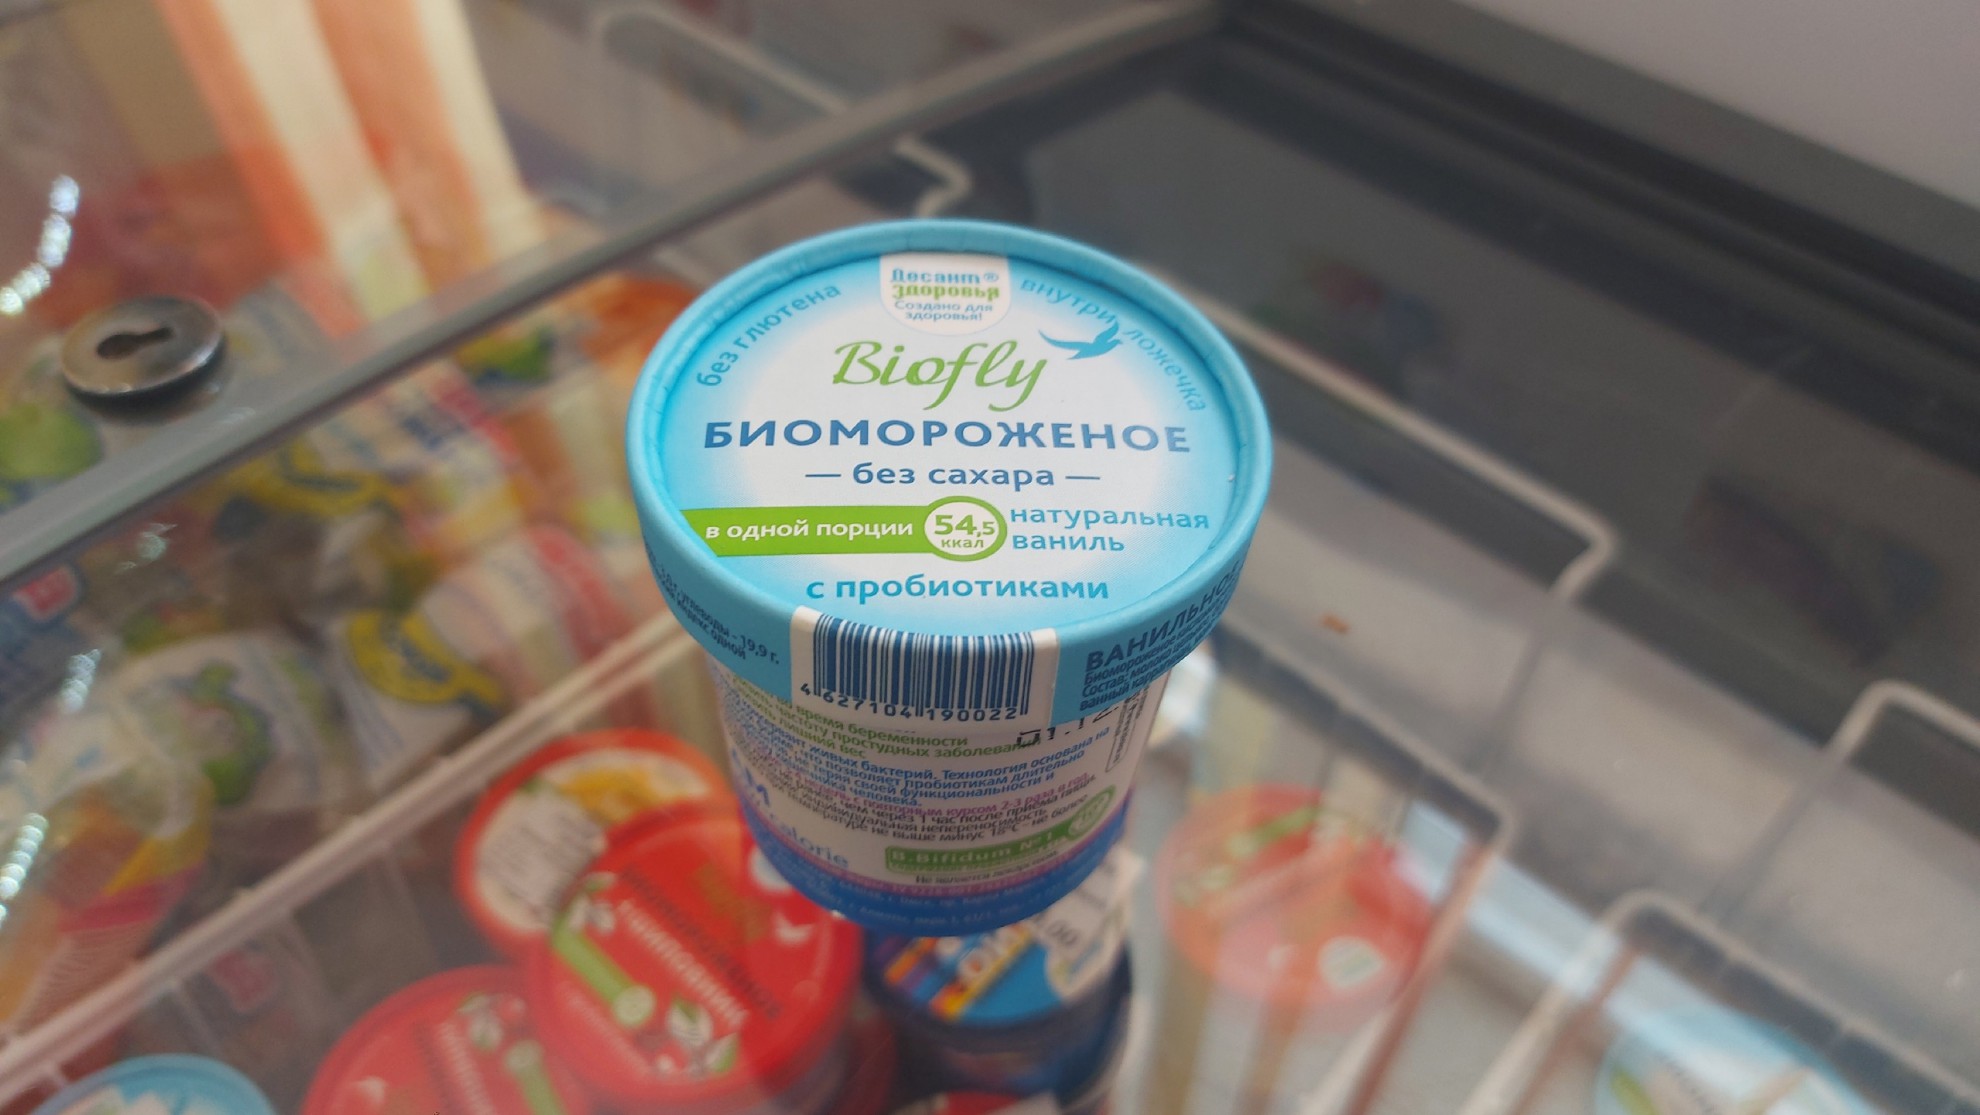 Мороженое с пробиотиками советуют всем, чтобы восстановить флору кишечника, например, после антибиотиков